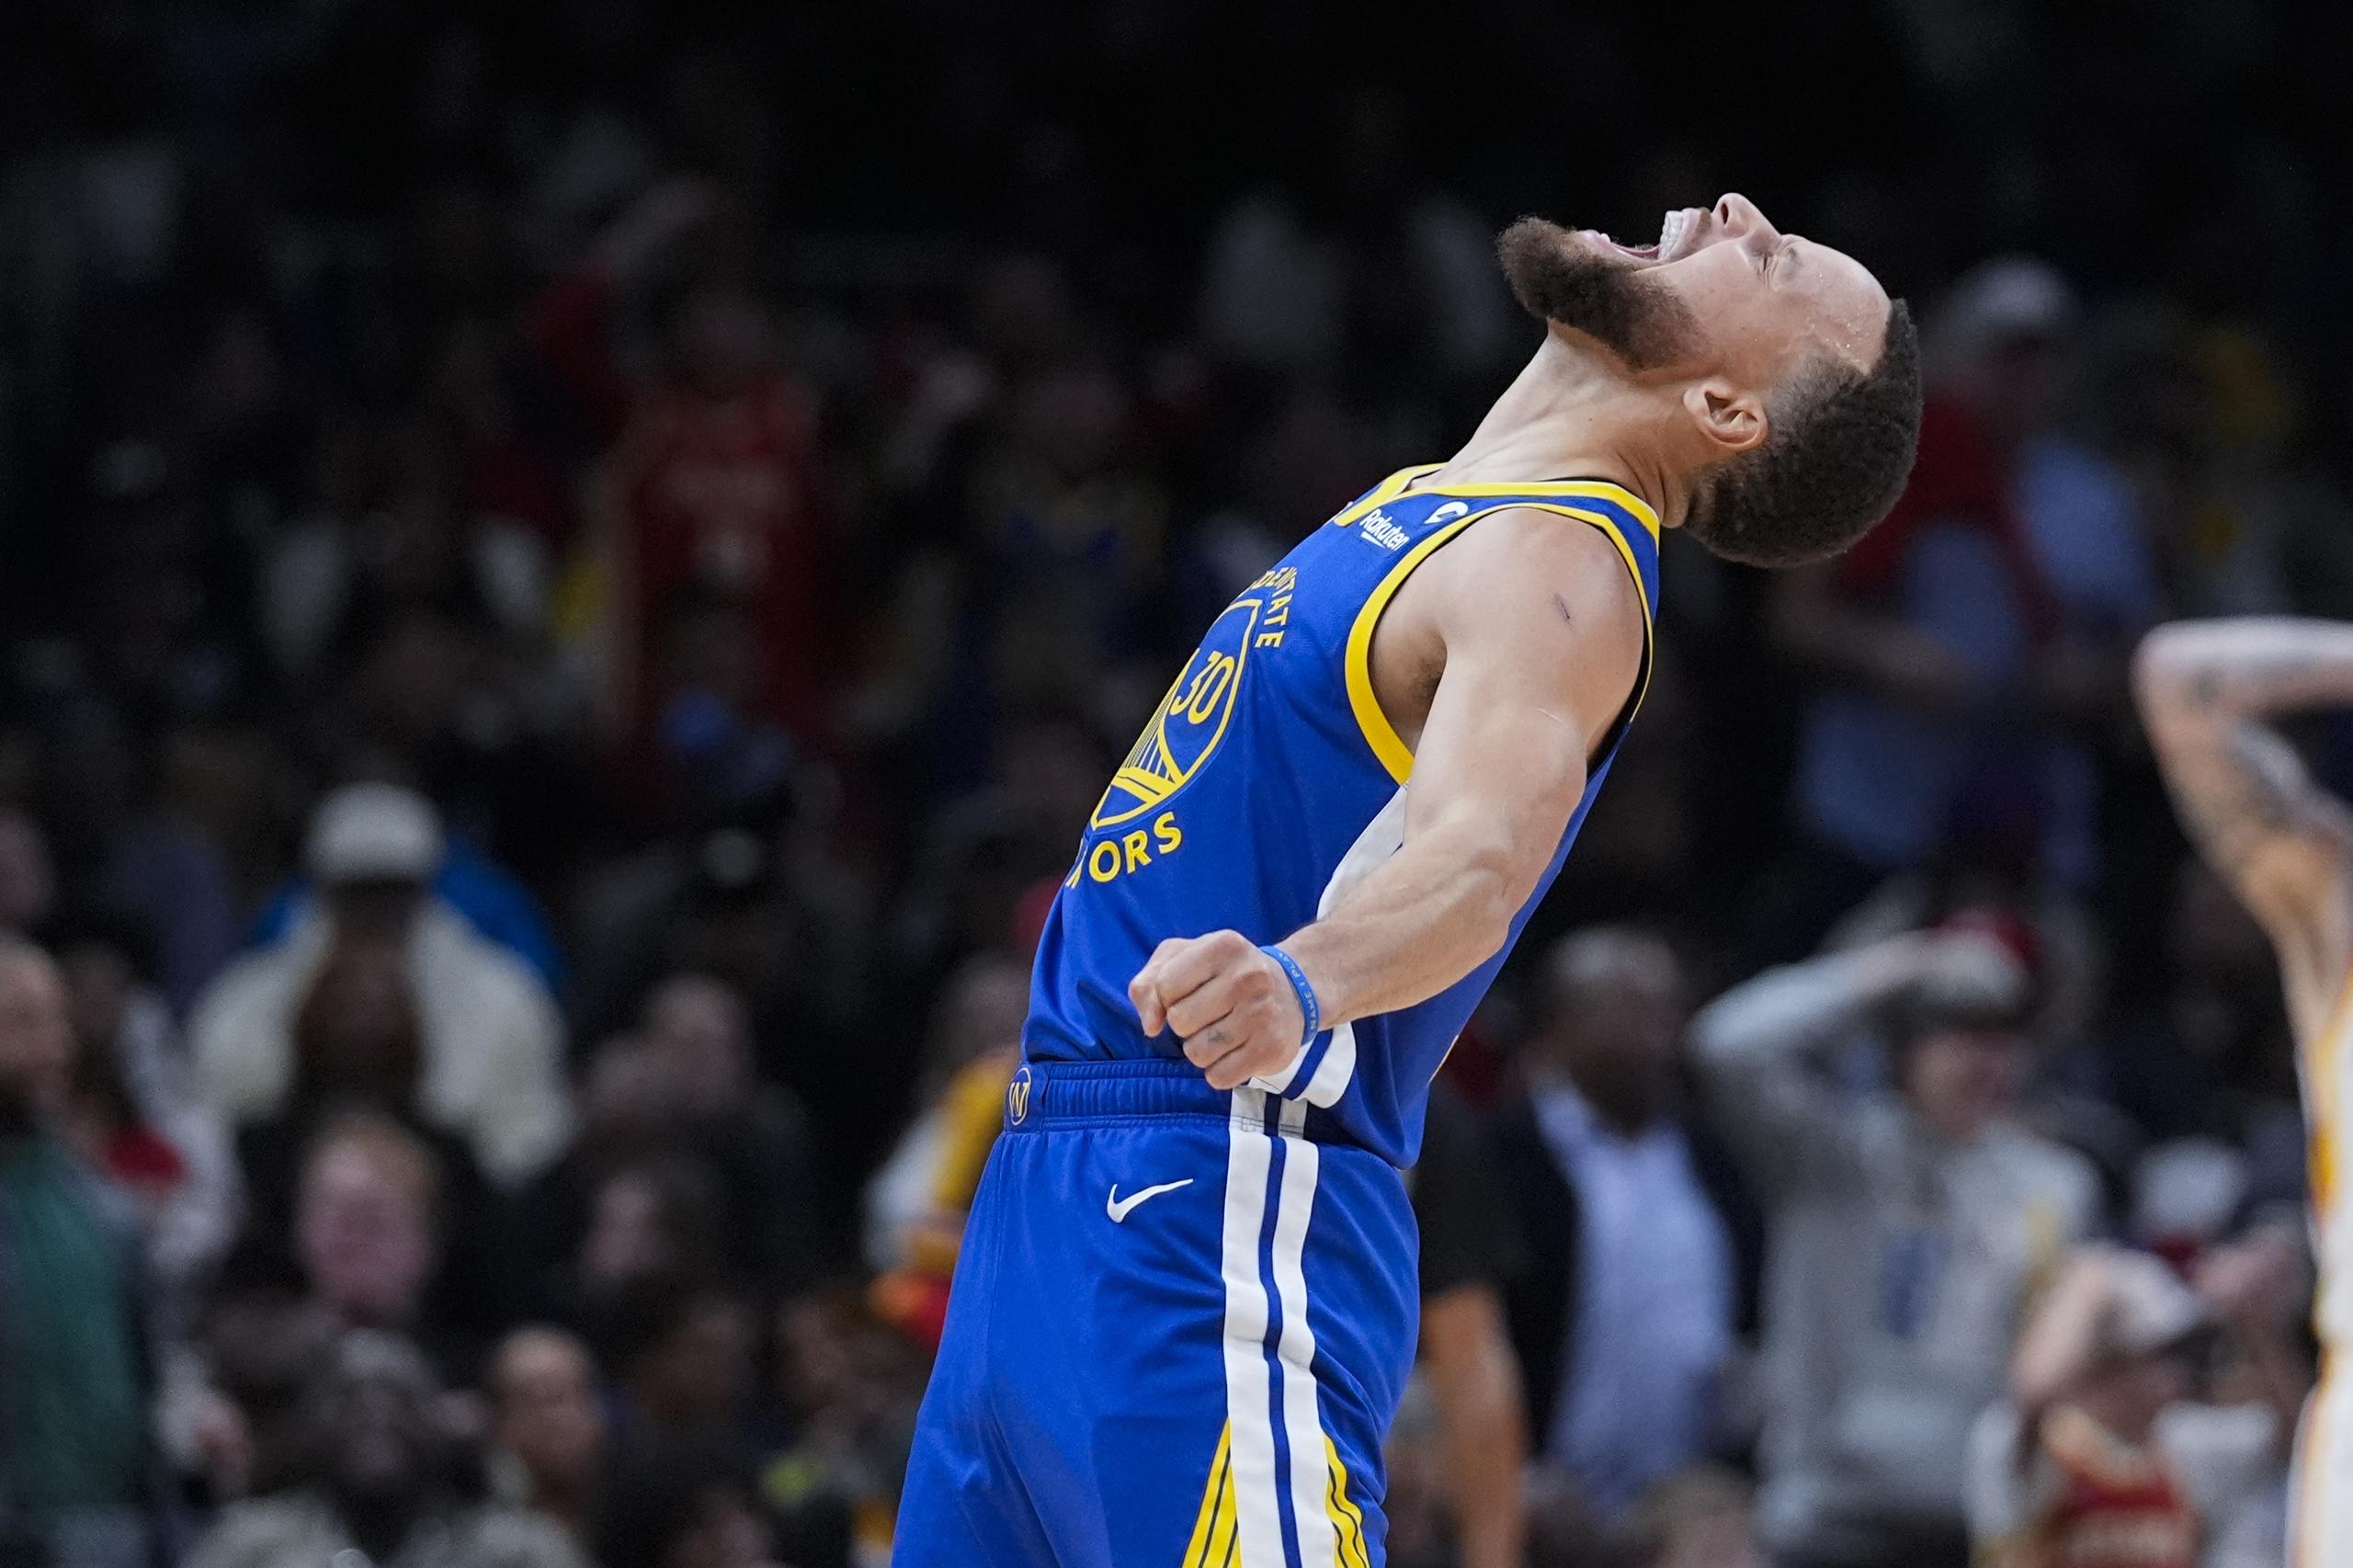 El escolta de los Warriors de Golden State, Stephen Curry, reacciona después de anotar en la segunda mitad del partido de baloncesto de la NBA contra los Hawks de Atlanta.